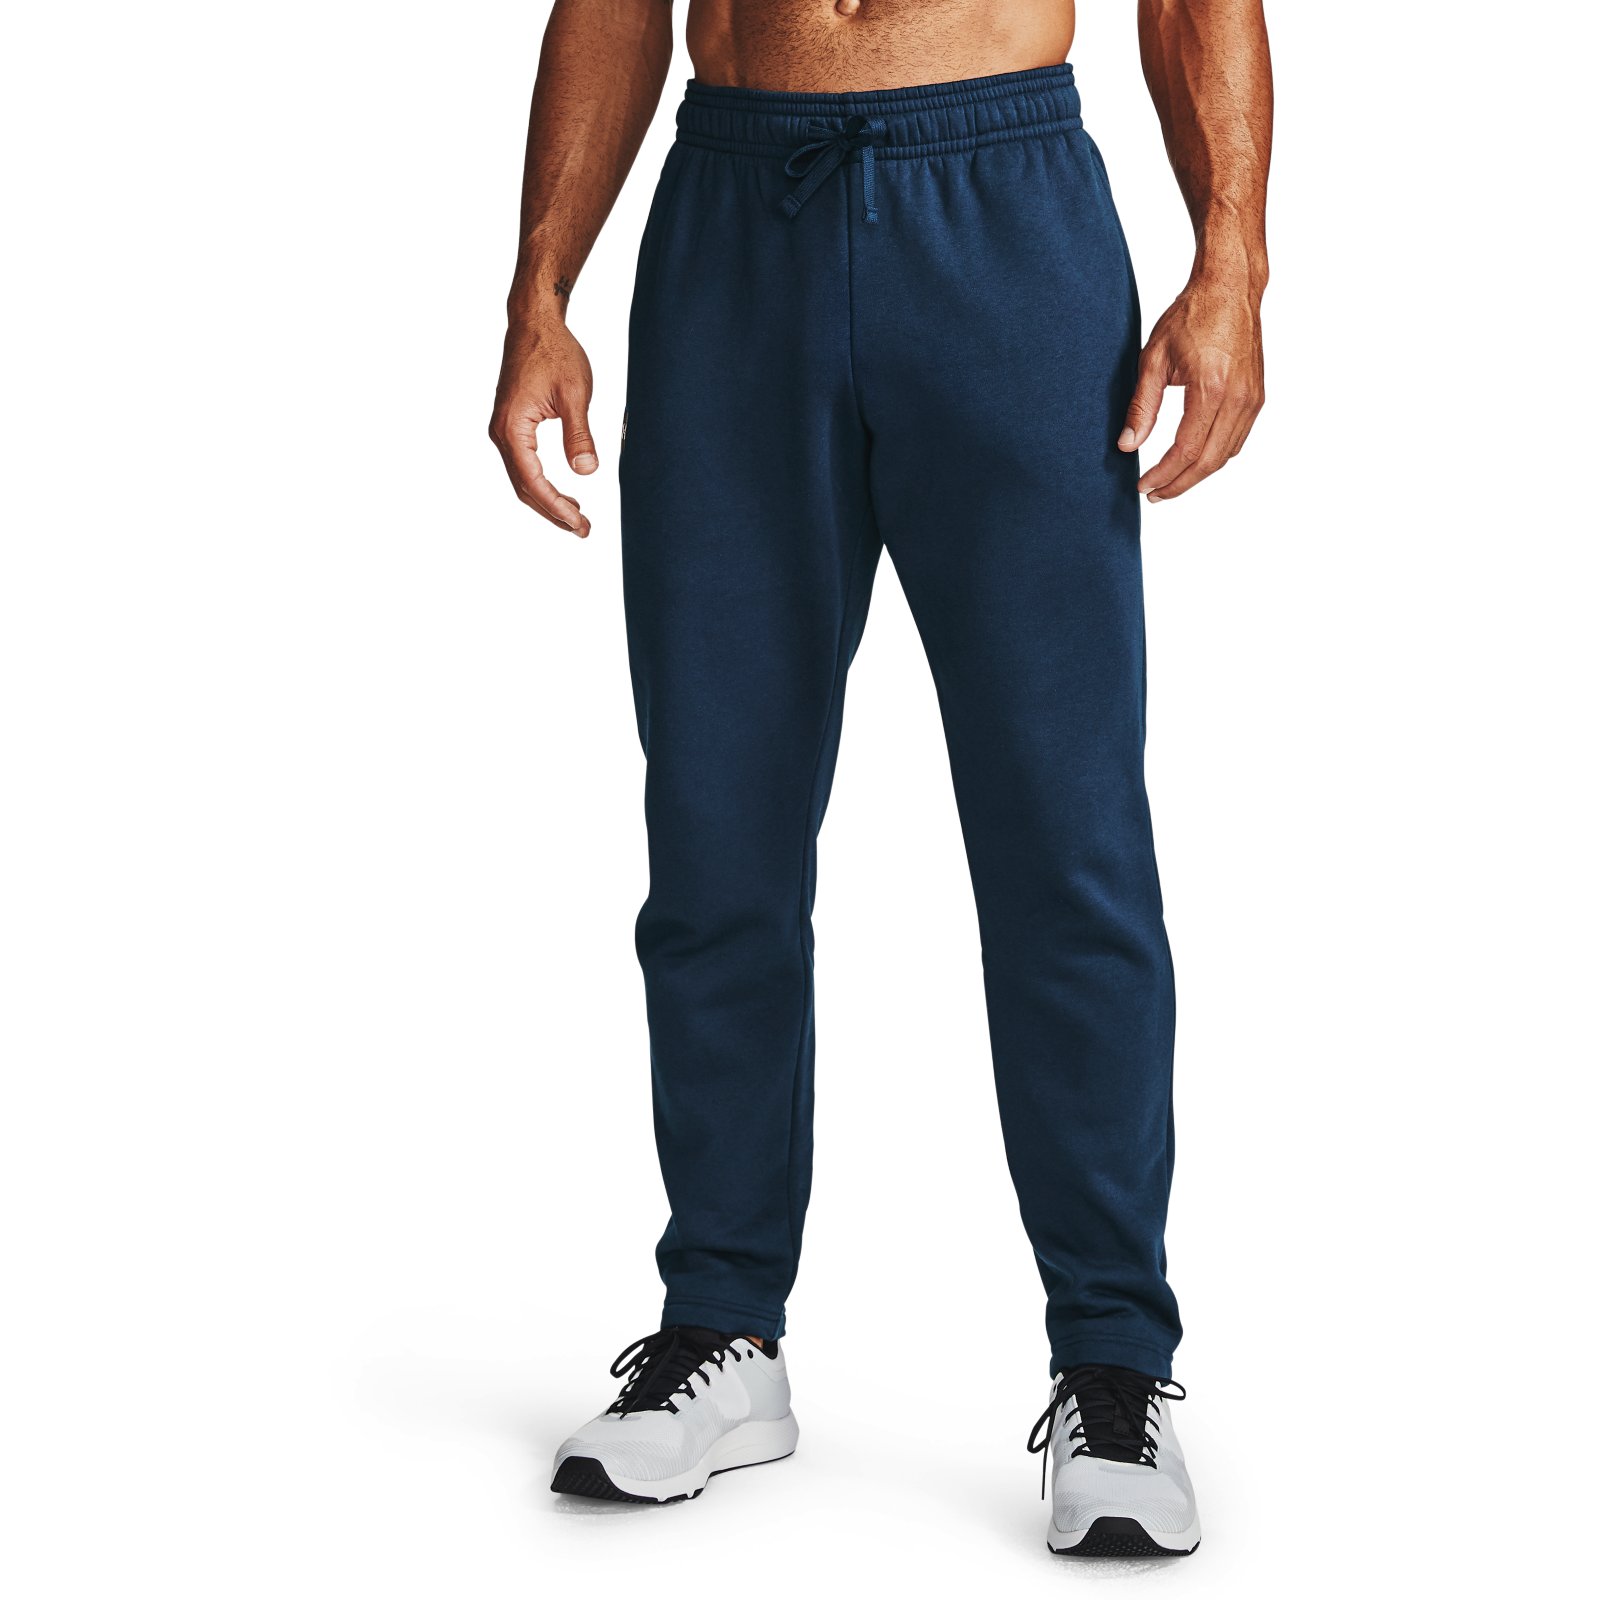 фото Спортивные брюки мужские under armour 1357129 синие s/m